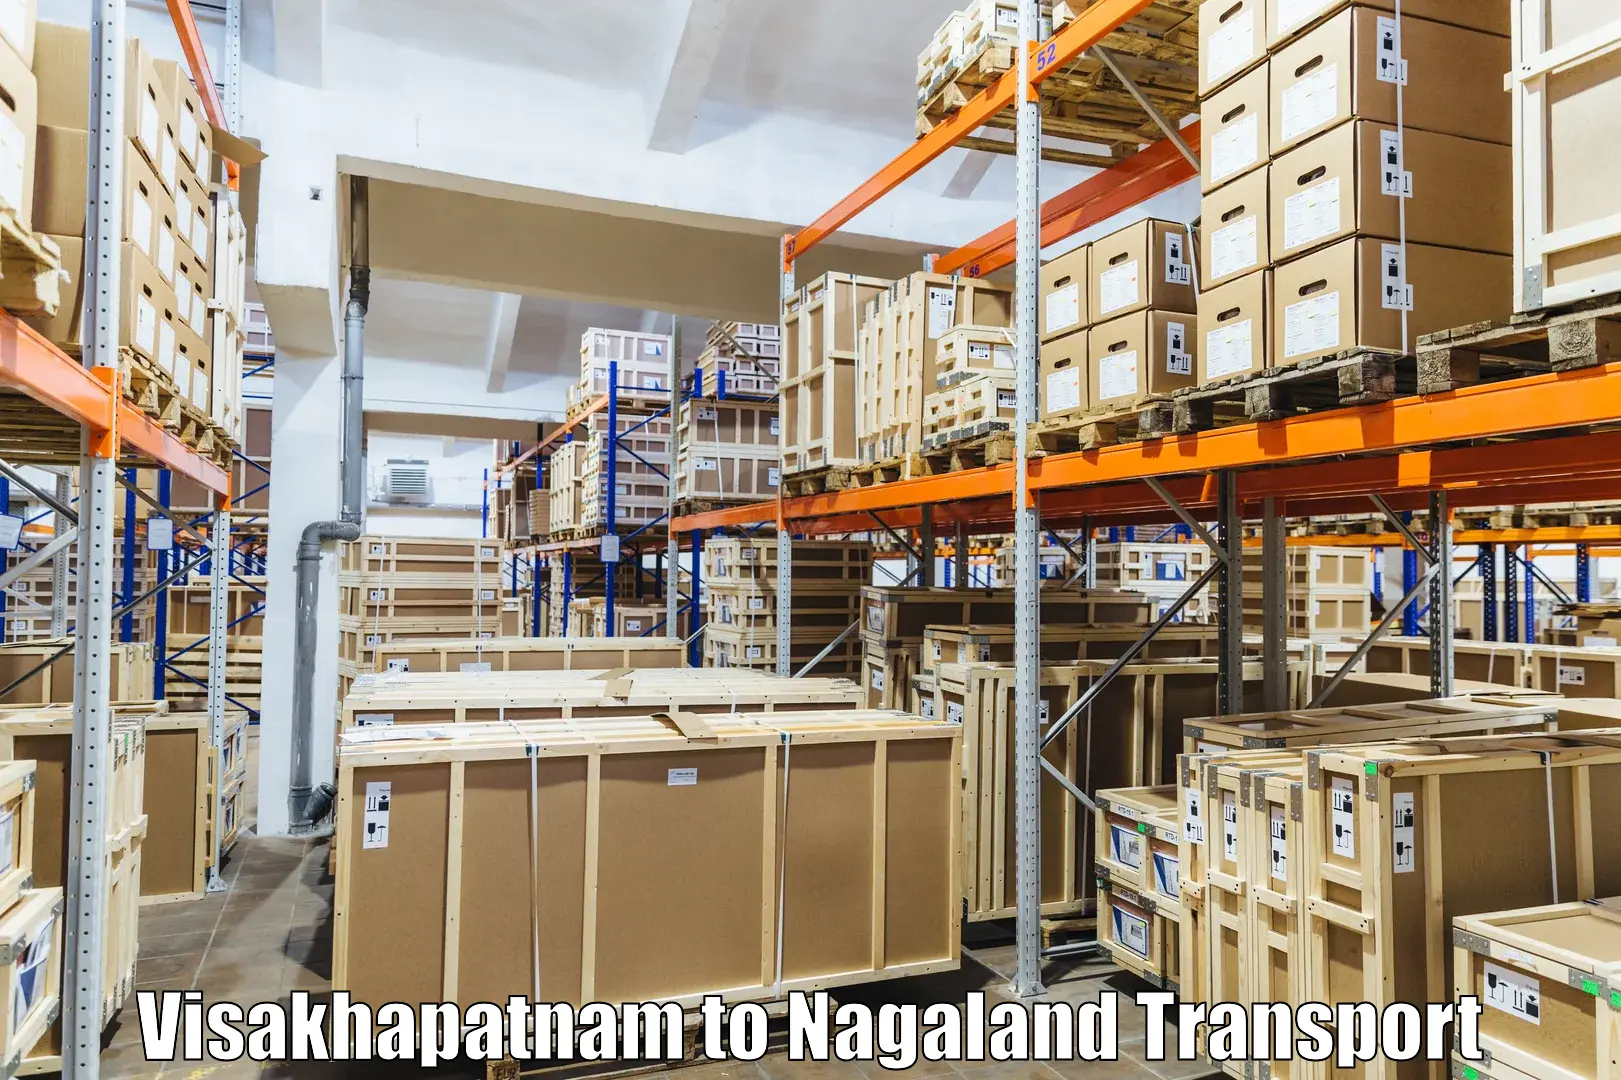 Road transport online services Visakhapatnam to NIT Nagaland